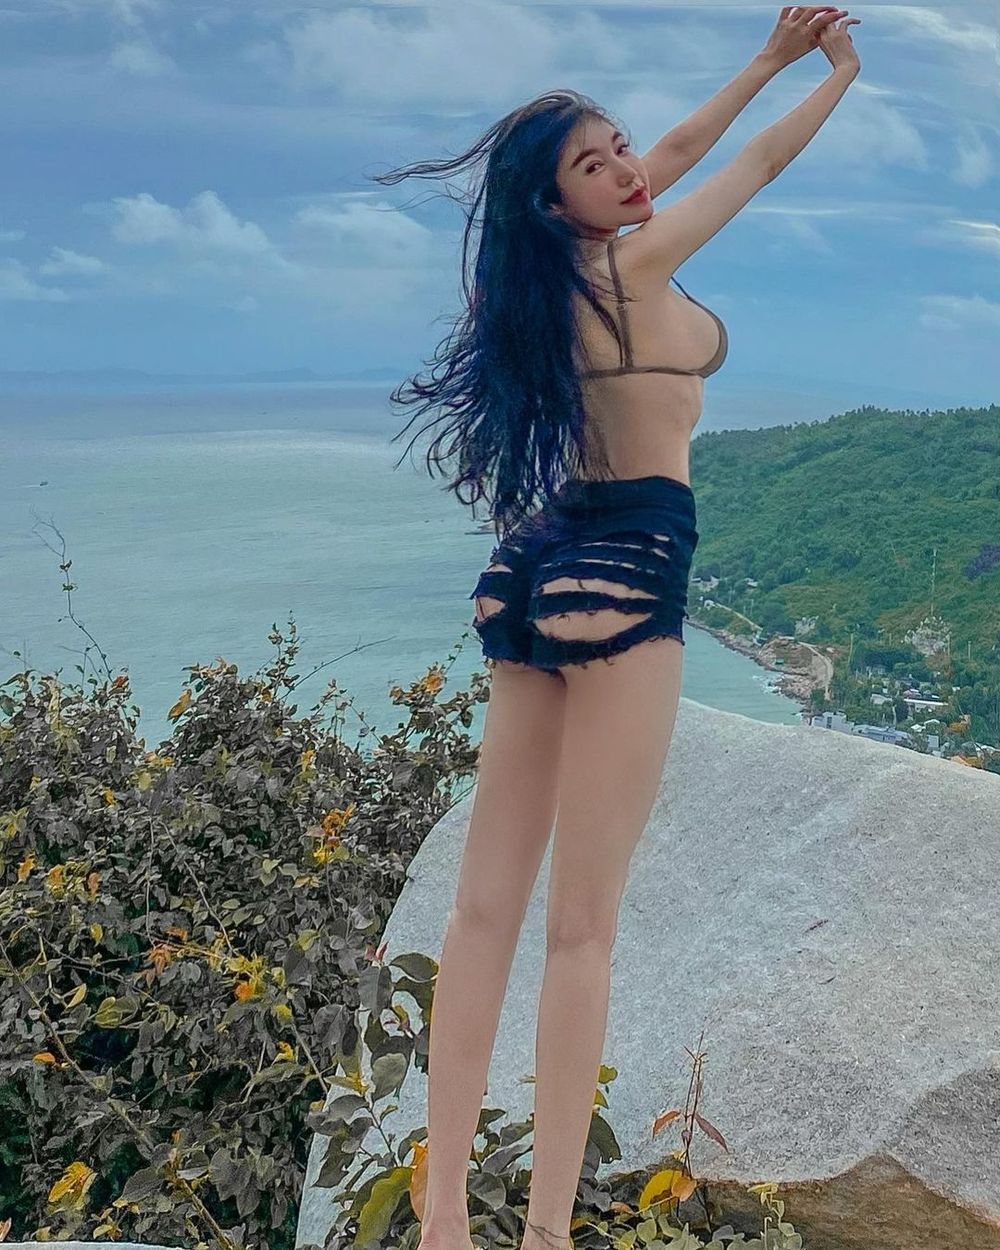  
Elly Trần khoe làn da trắng nõn và nuột nà của mình với mẫu quần jean rách toang. (Ảnh: Instagram nhân vật)